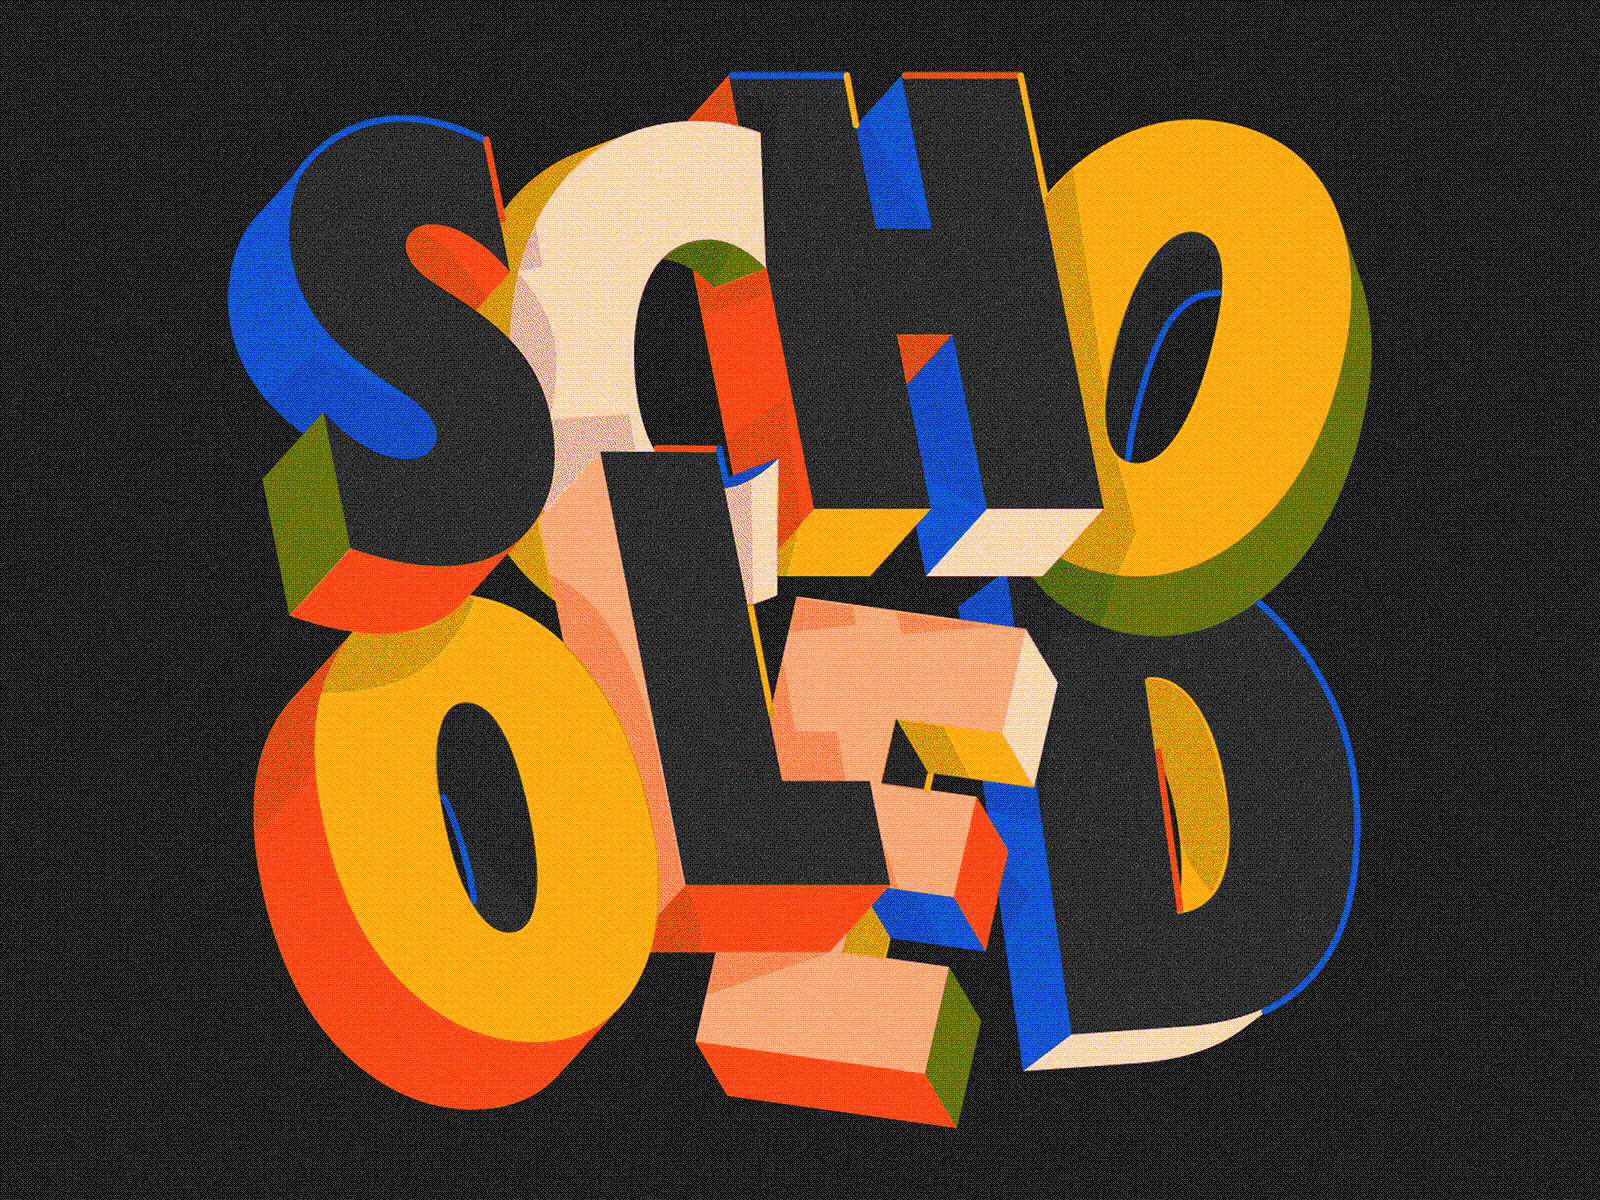 Schooled 3d 3d lettering 3d type animation graphic design illustration lettering animation lettering design motion graphics type type animation type design typography typography animation